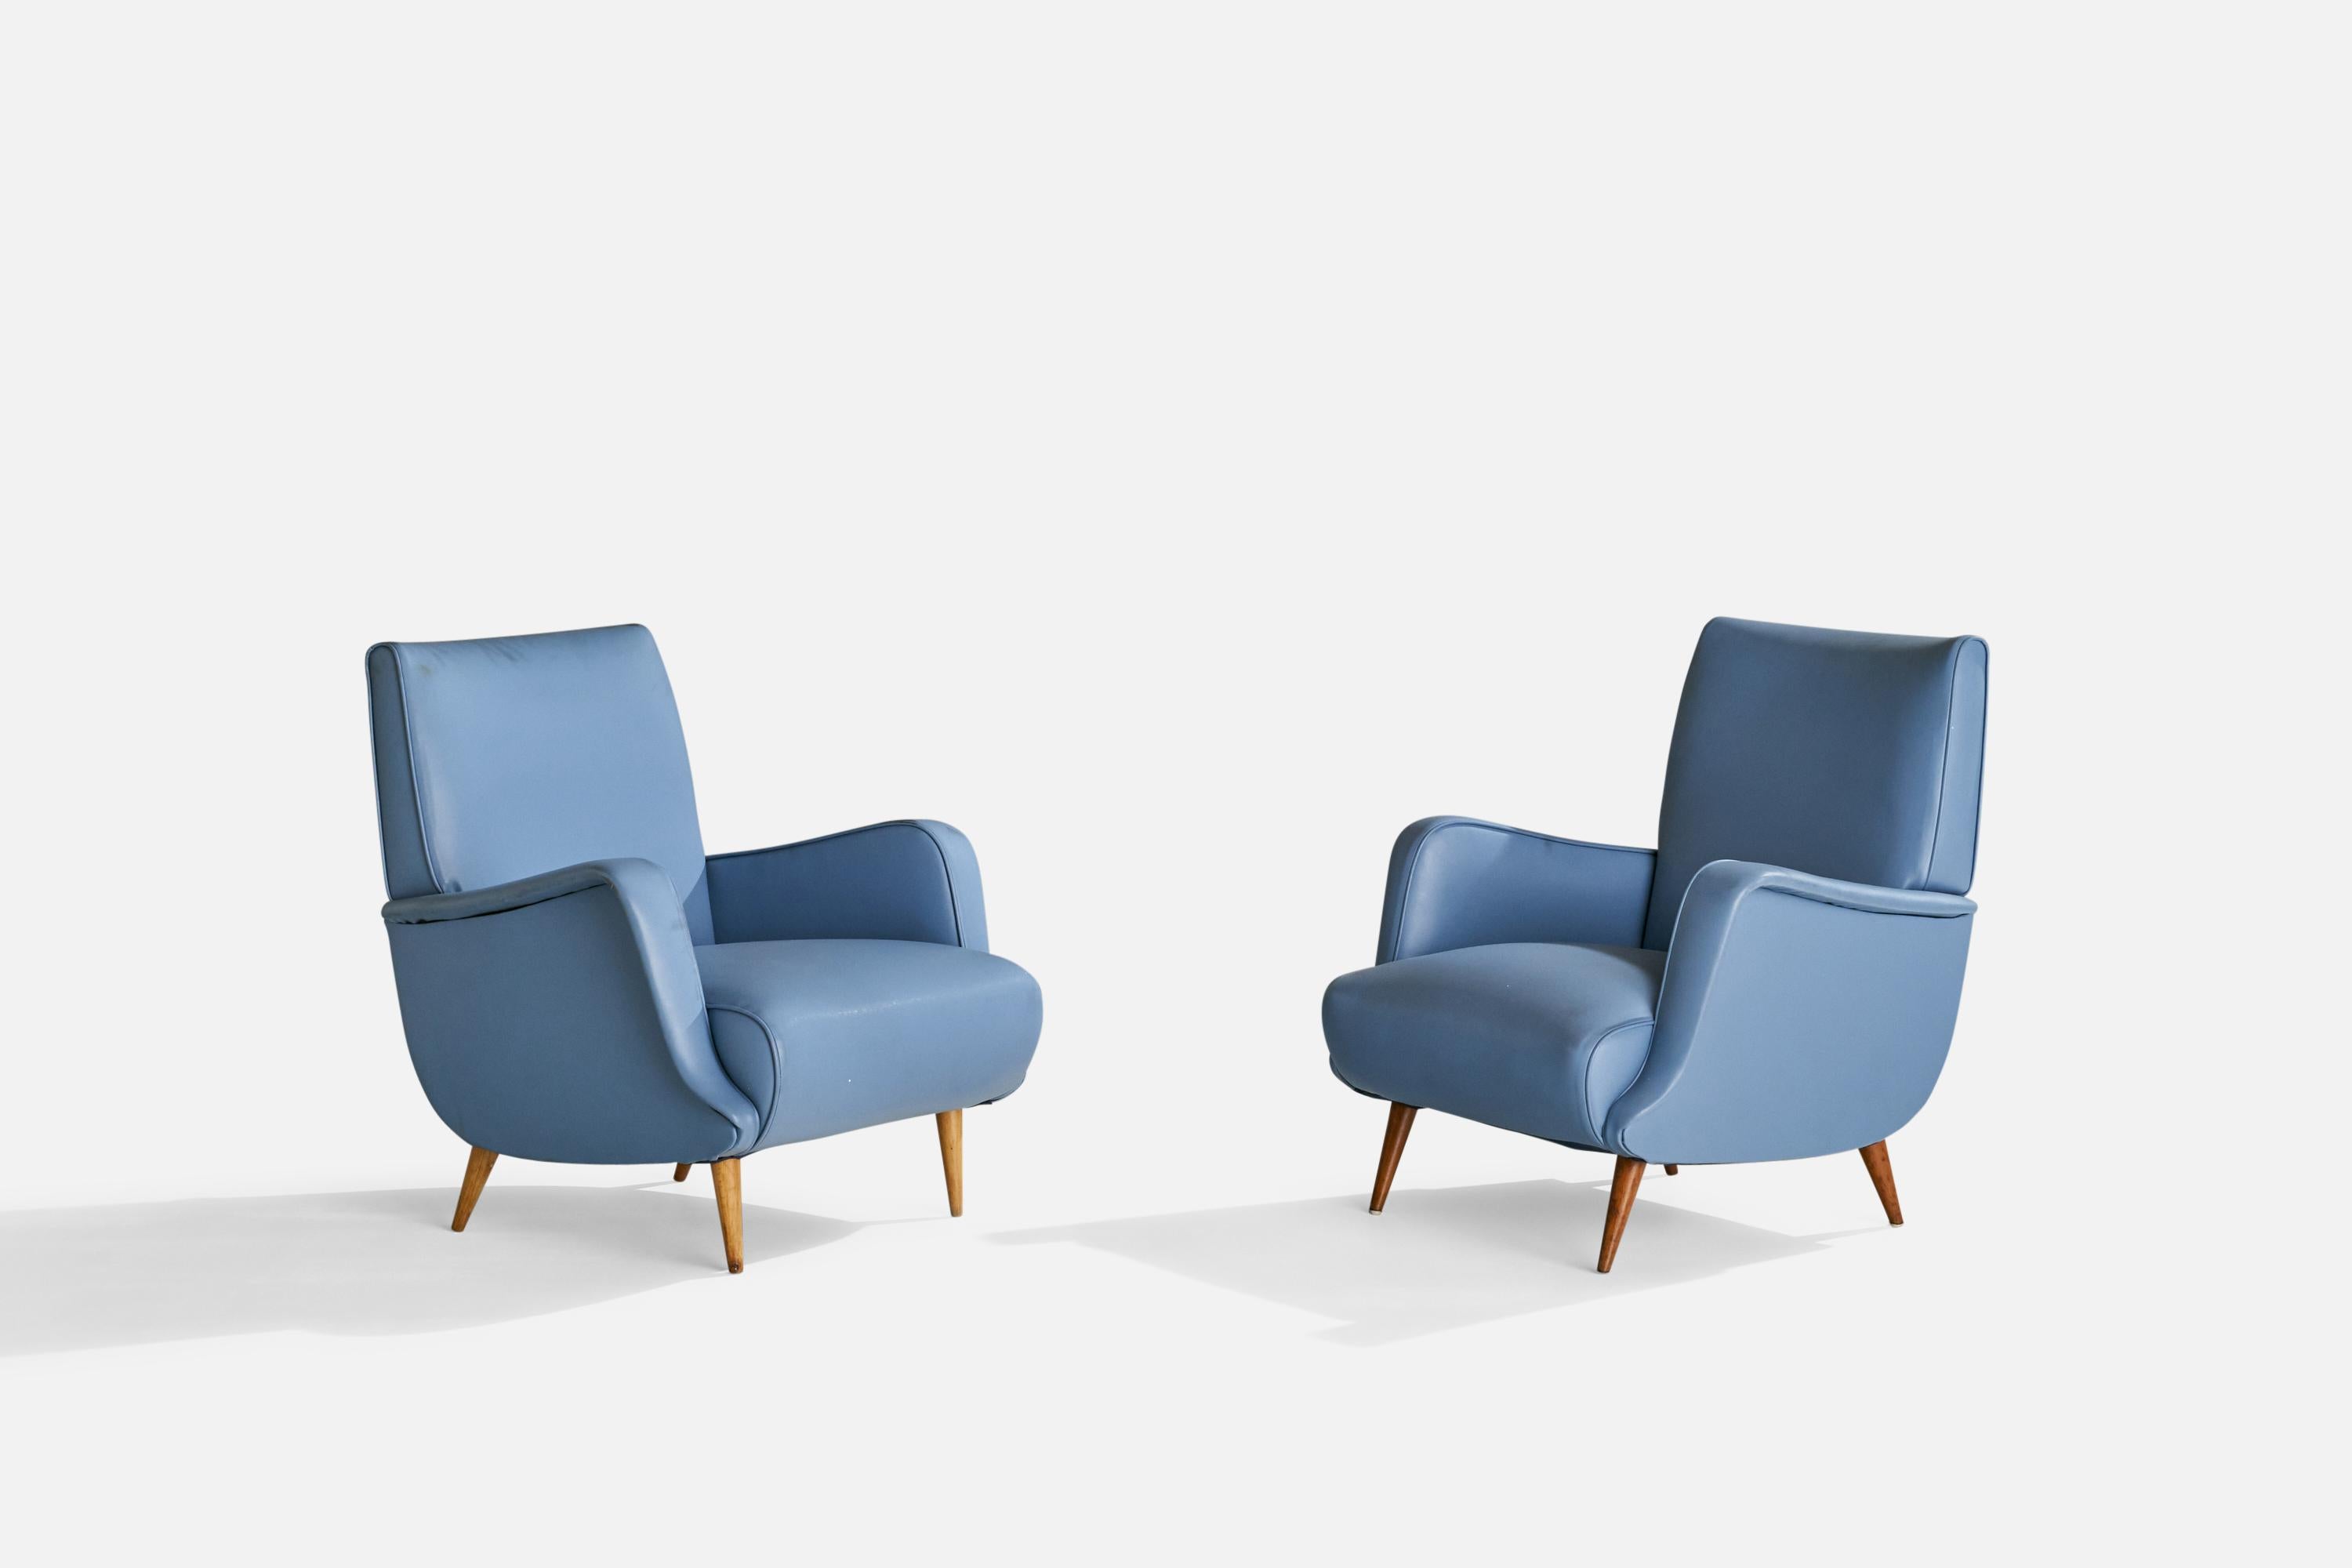 Paire de chaises longues en vinyle bleu et en bois conçues par Carlo De Carli, Italie, vers les années 1960.

Hauteur d'assise 15